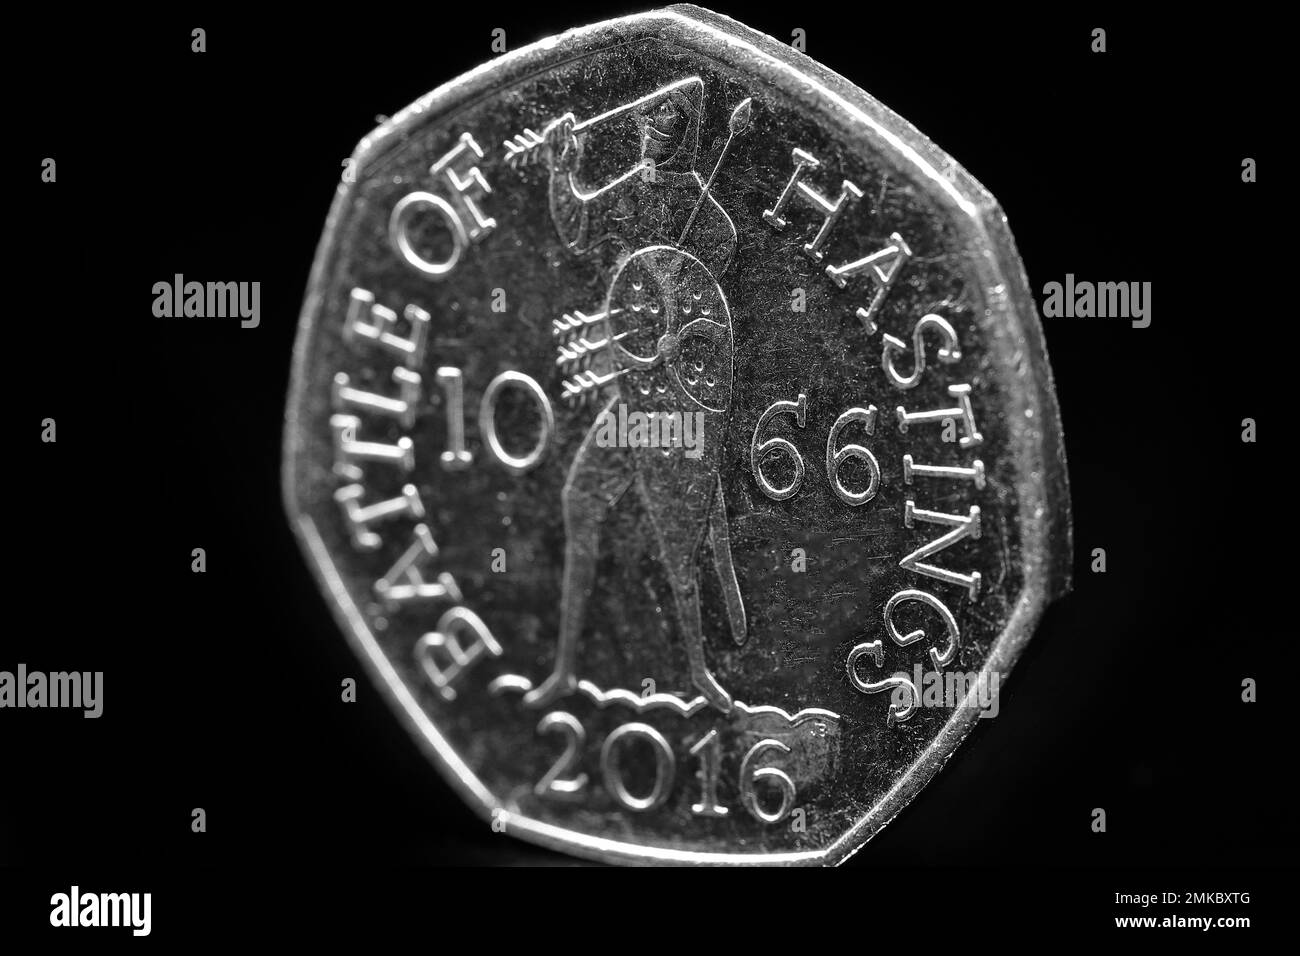 Rückseite einer 50p-Euro-Münze, die 2013 zur Erinnerung an die Schlacht von Hastings im Jahr 1066 ausgegeben wurde Stockfoto